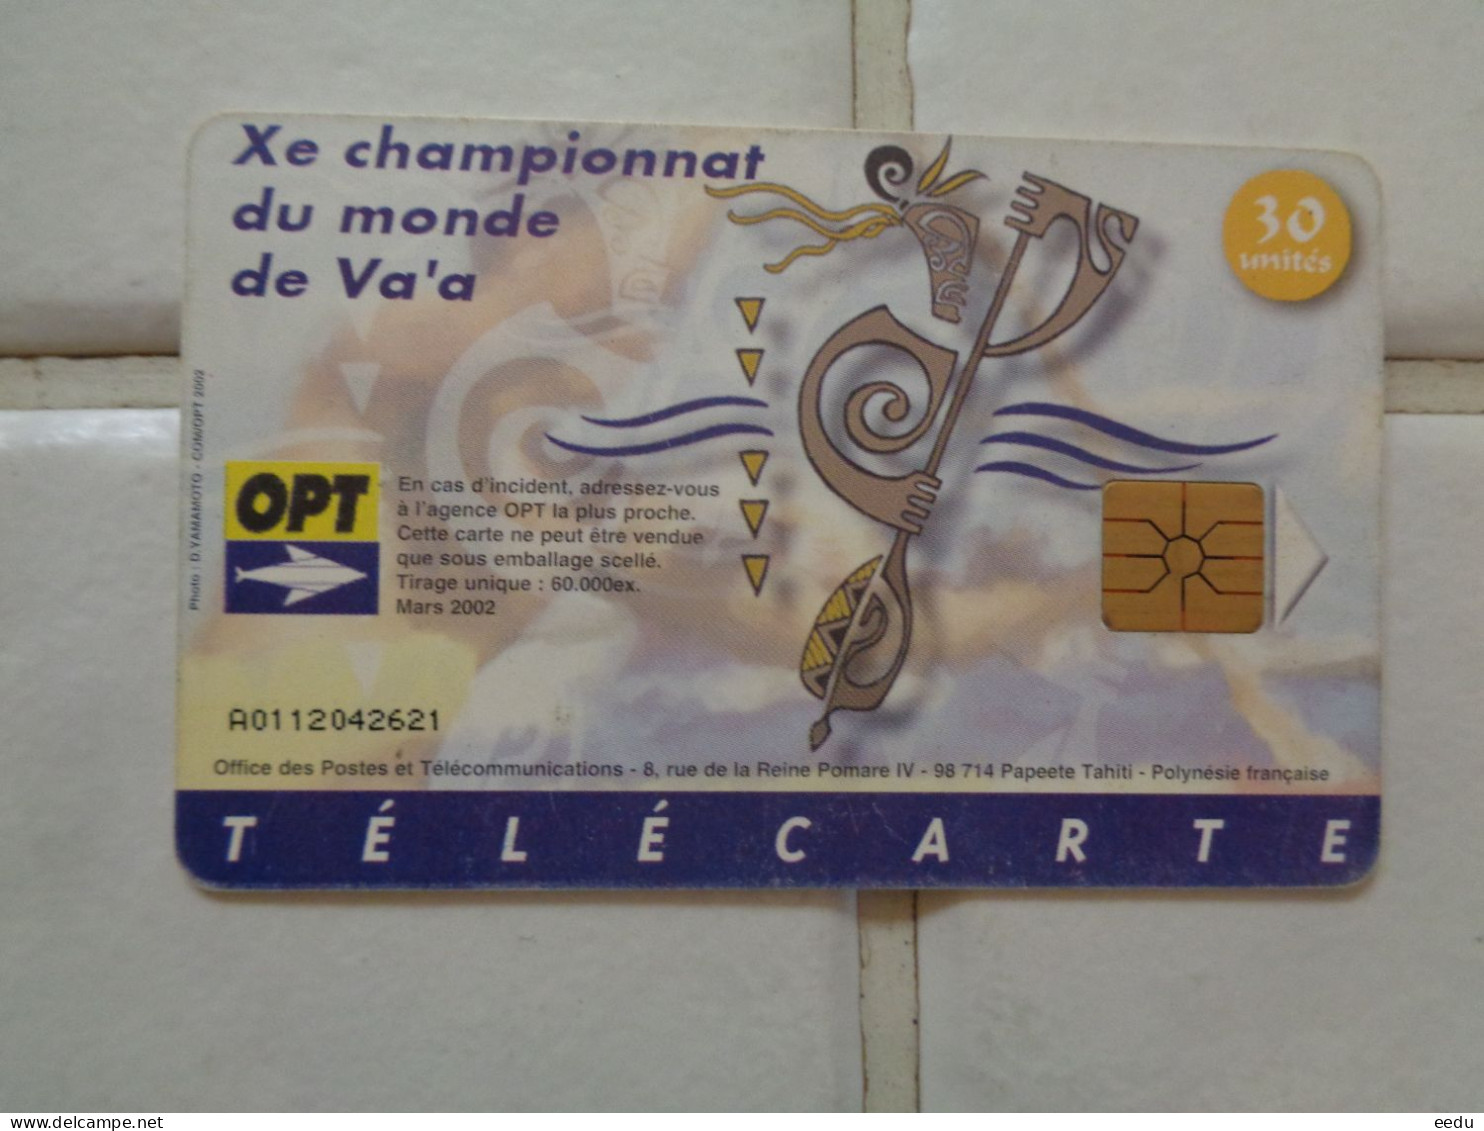 French Polynesia Phonecard - French Polynesia